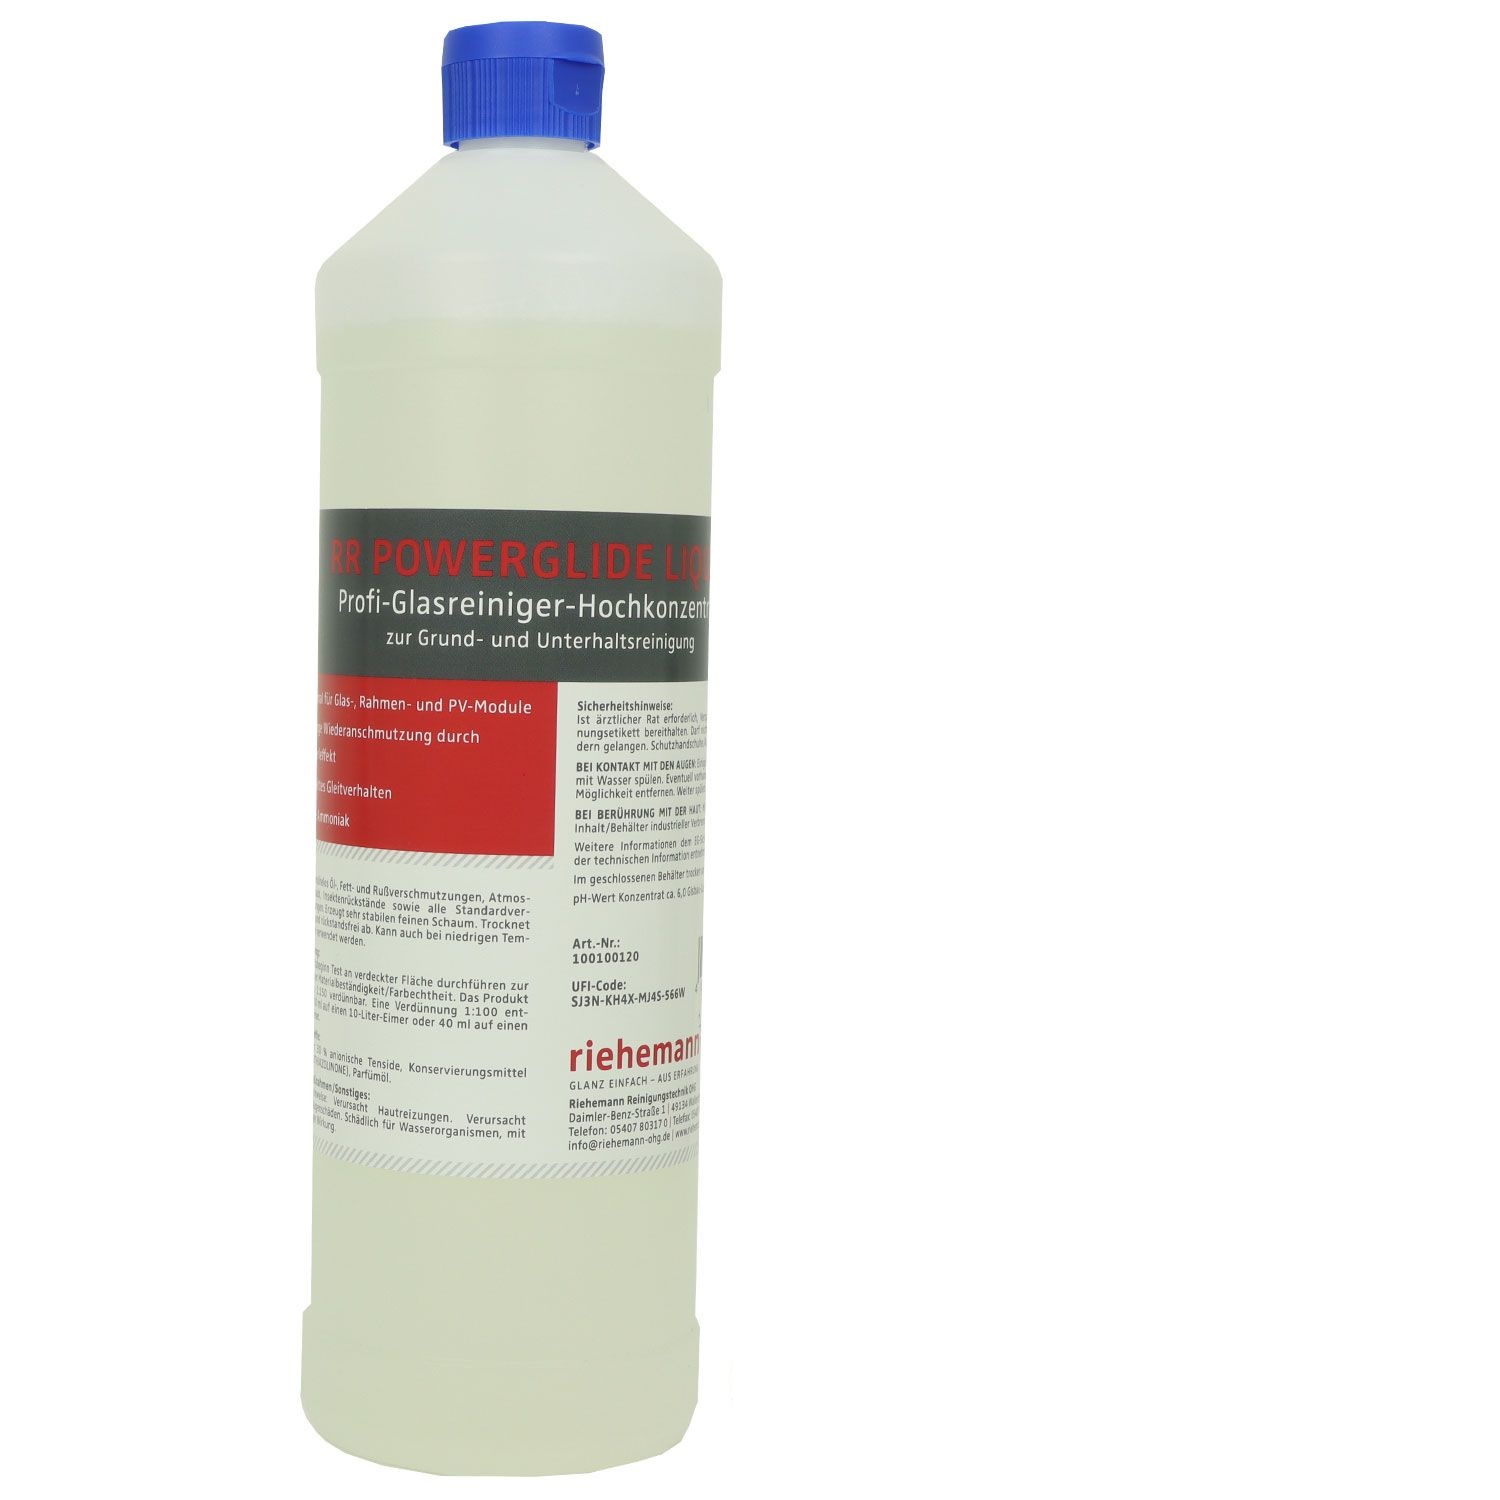 RR Powerglide Liquid, Profi-Glasreiniger-Hochkonzentrat, 1 Liter Flasche